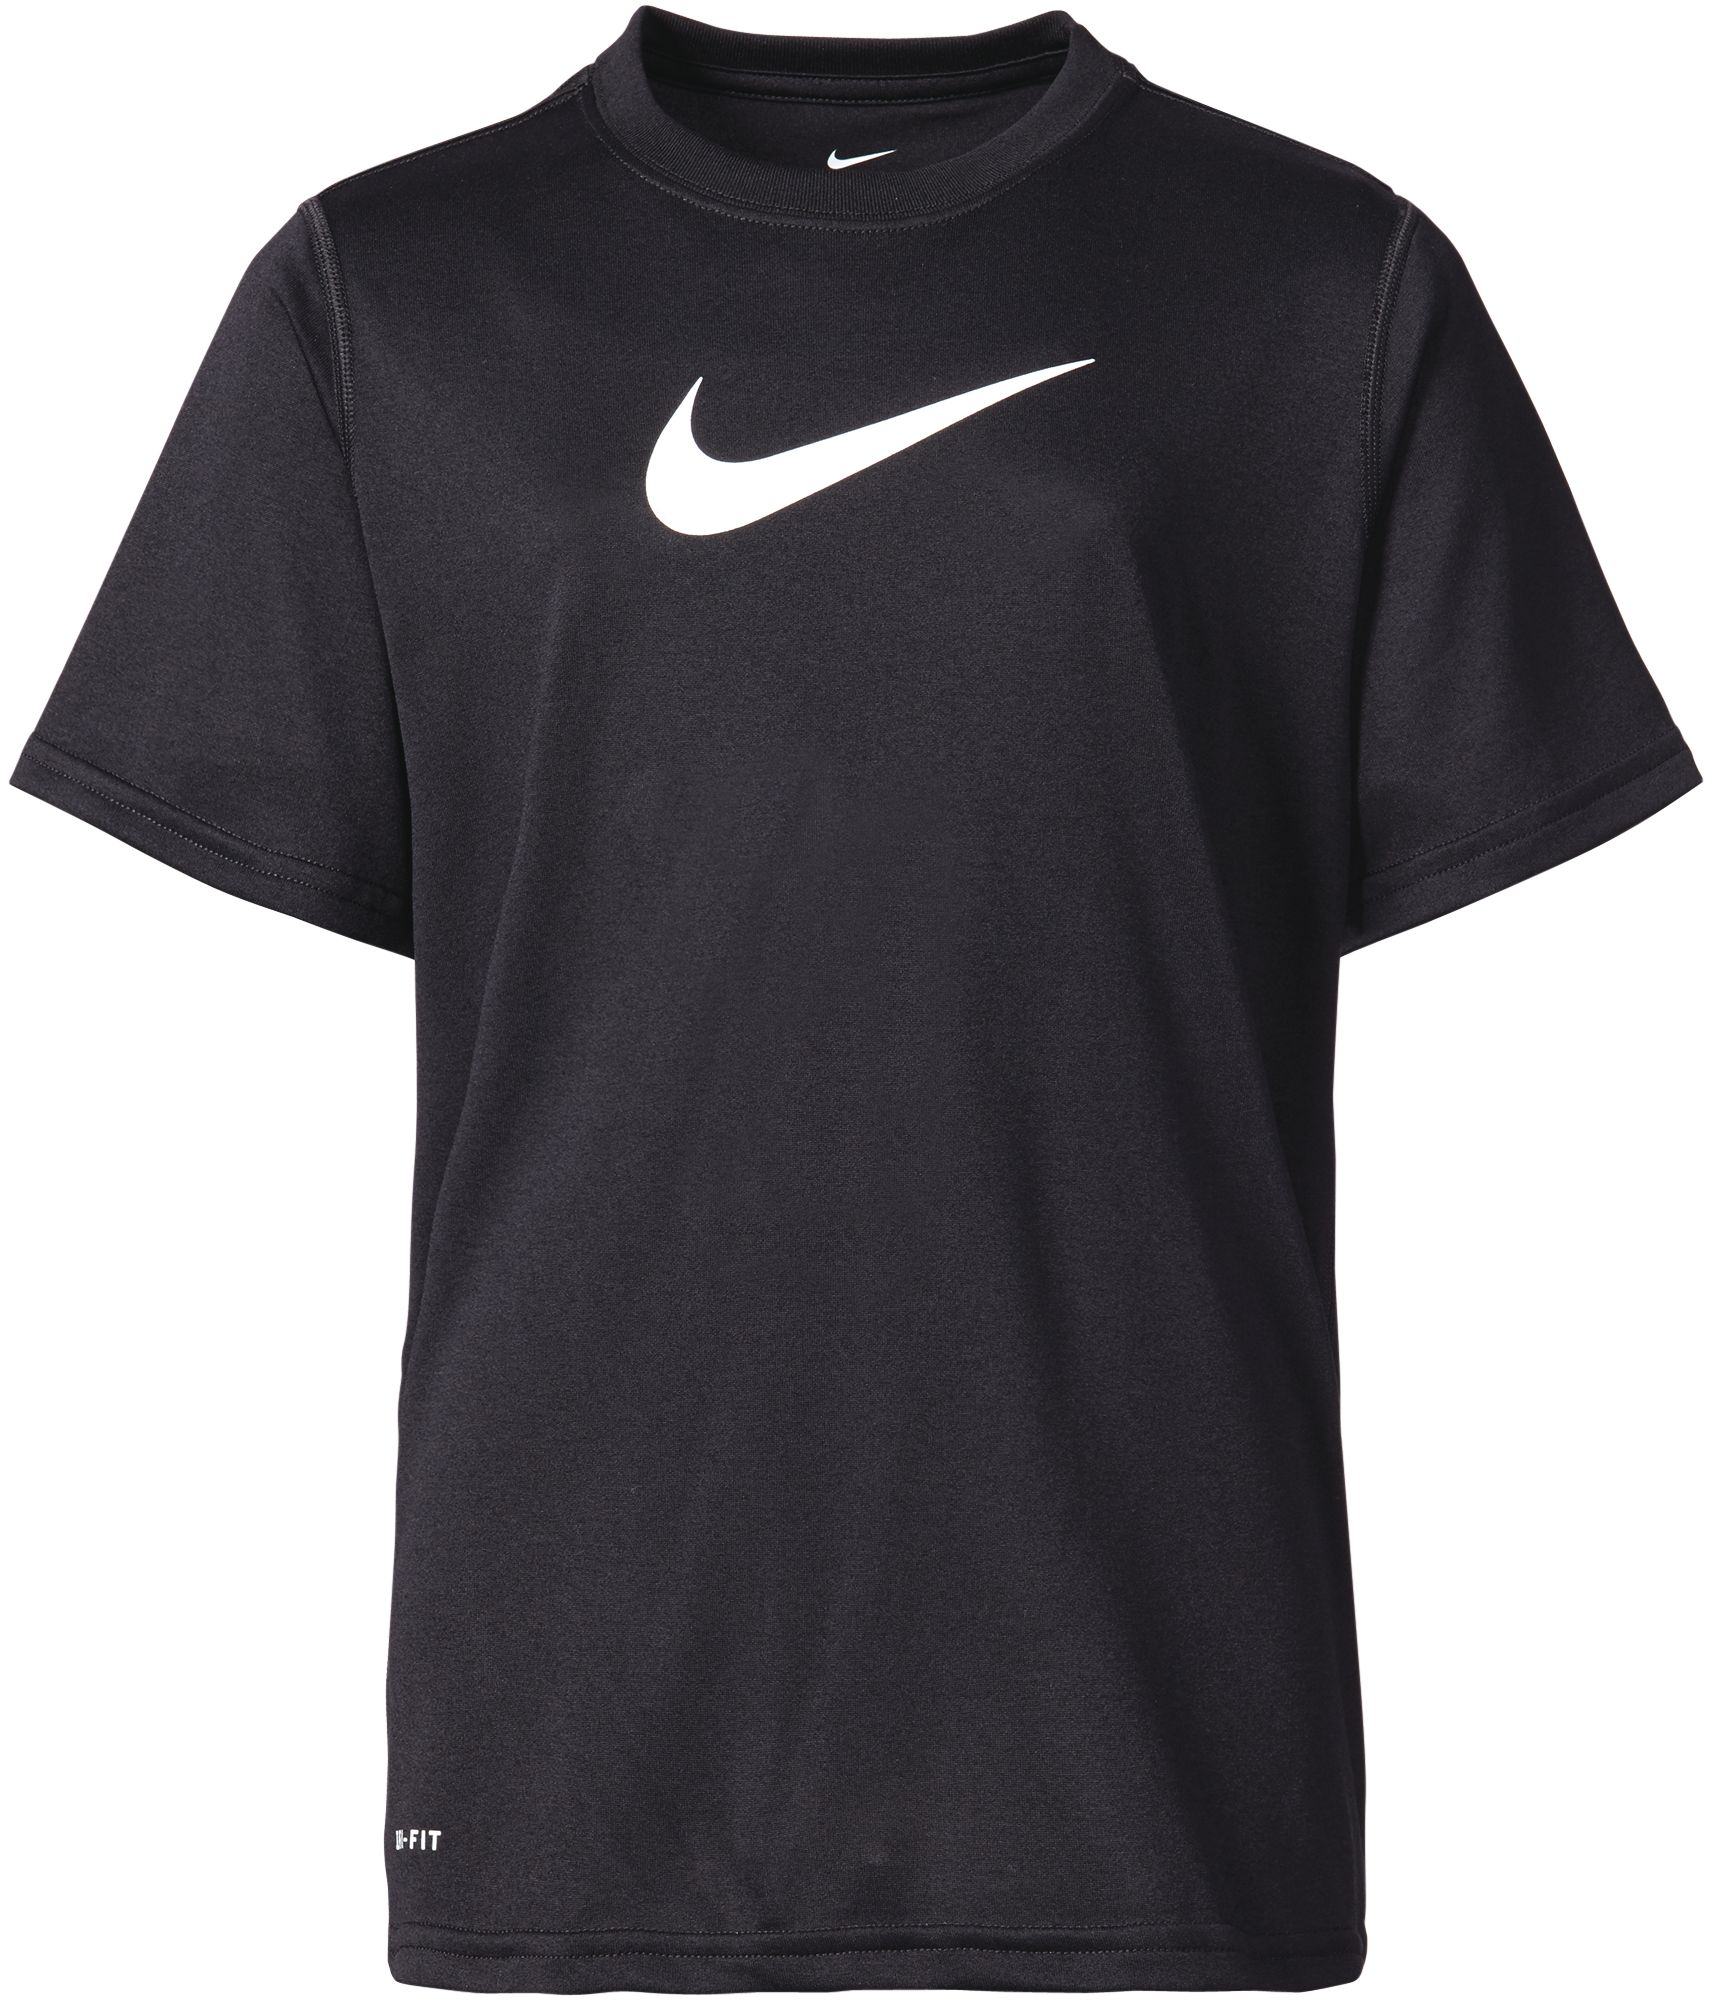 Boys' Shirts & T-Shirts | DICK'S Sporting Goods